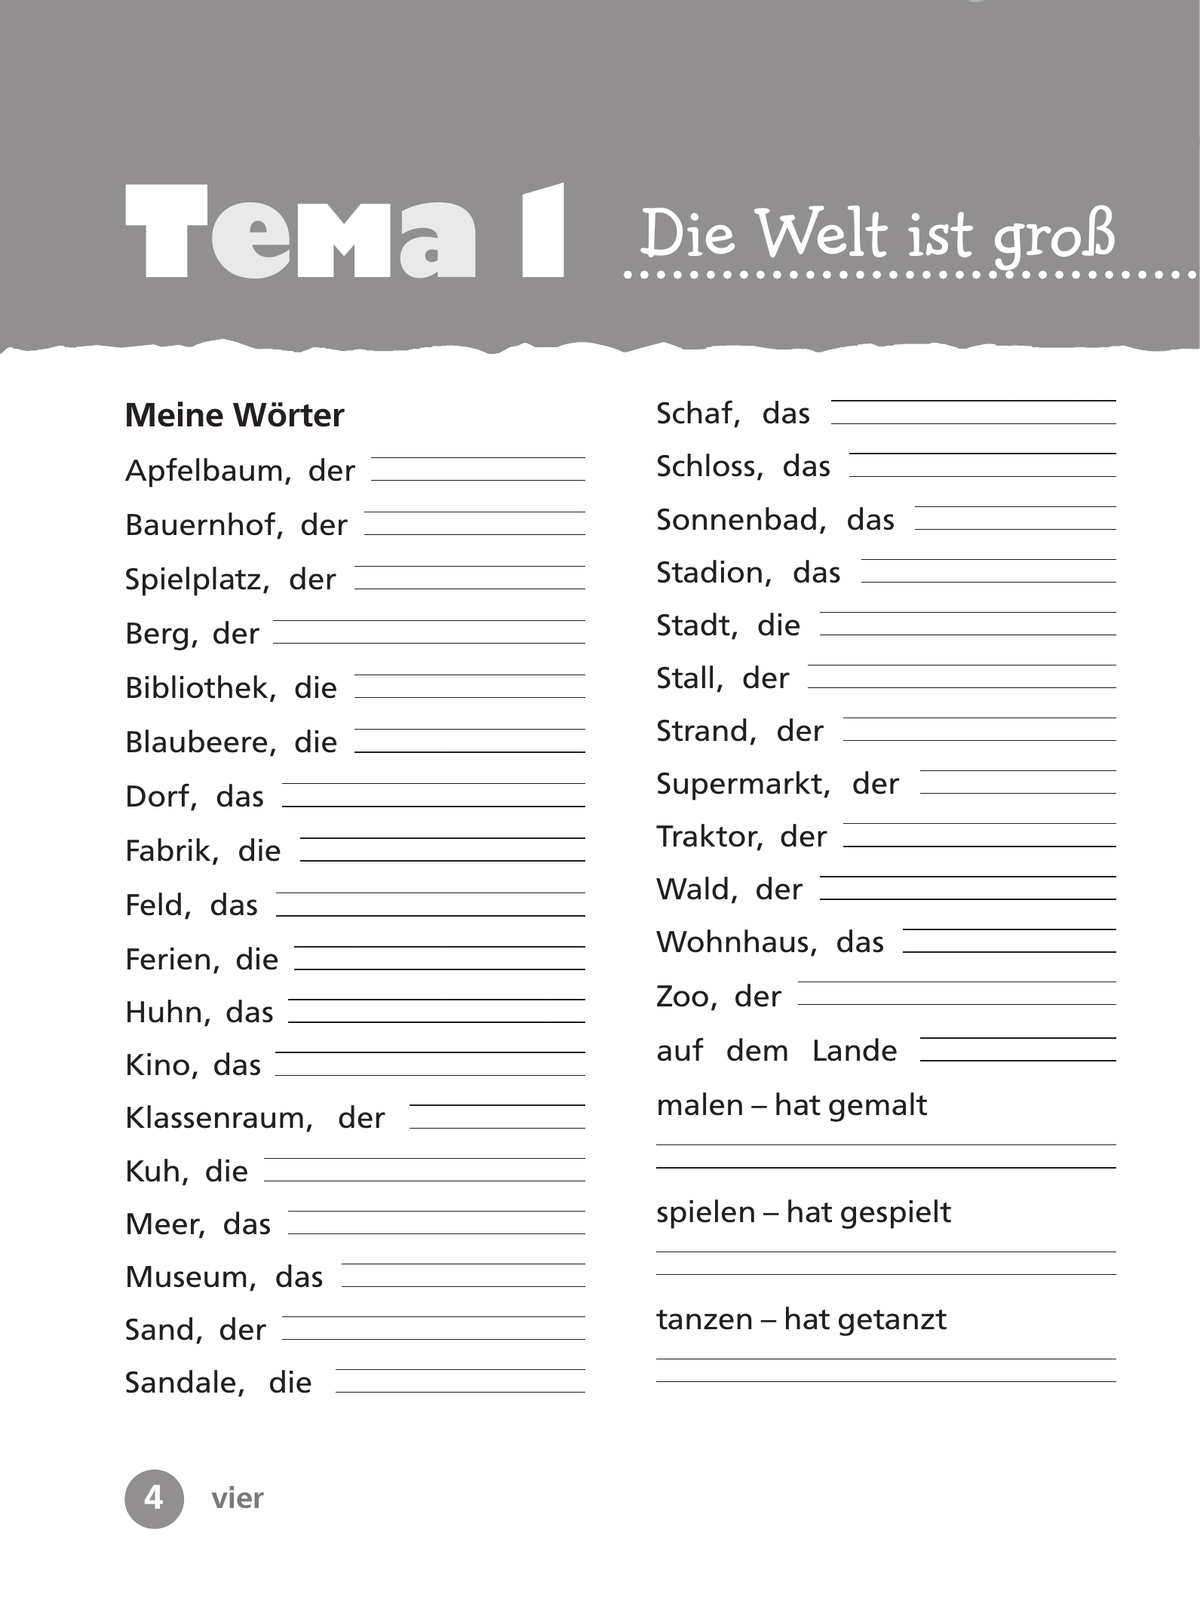 Немецкий язык. Рабочая тетрадь. 3 класс. В 2 ч. Часть 1 8